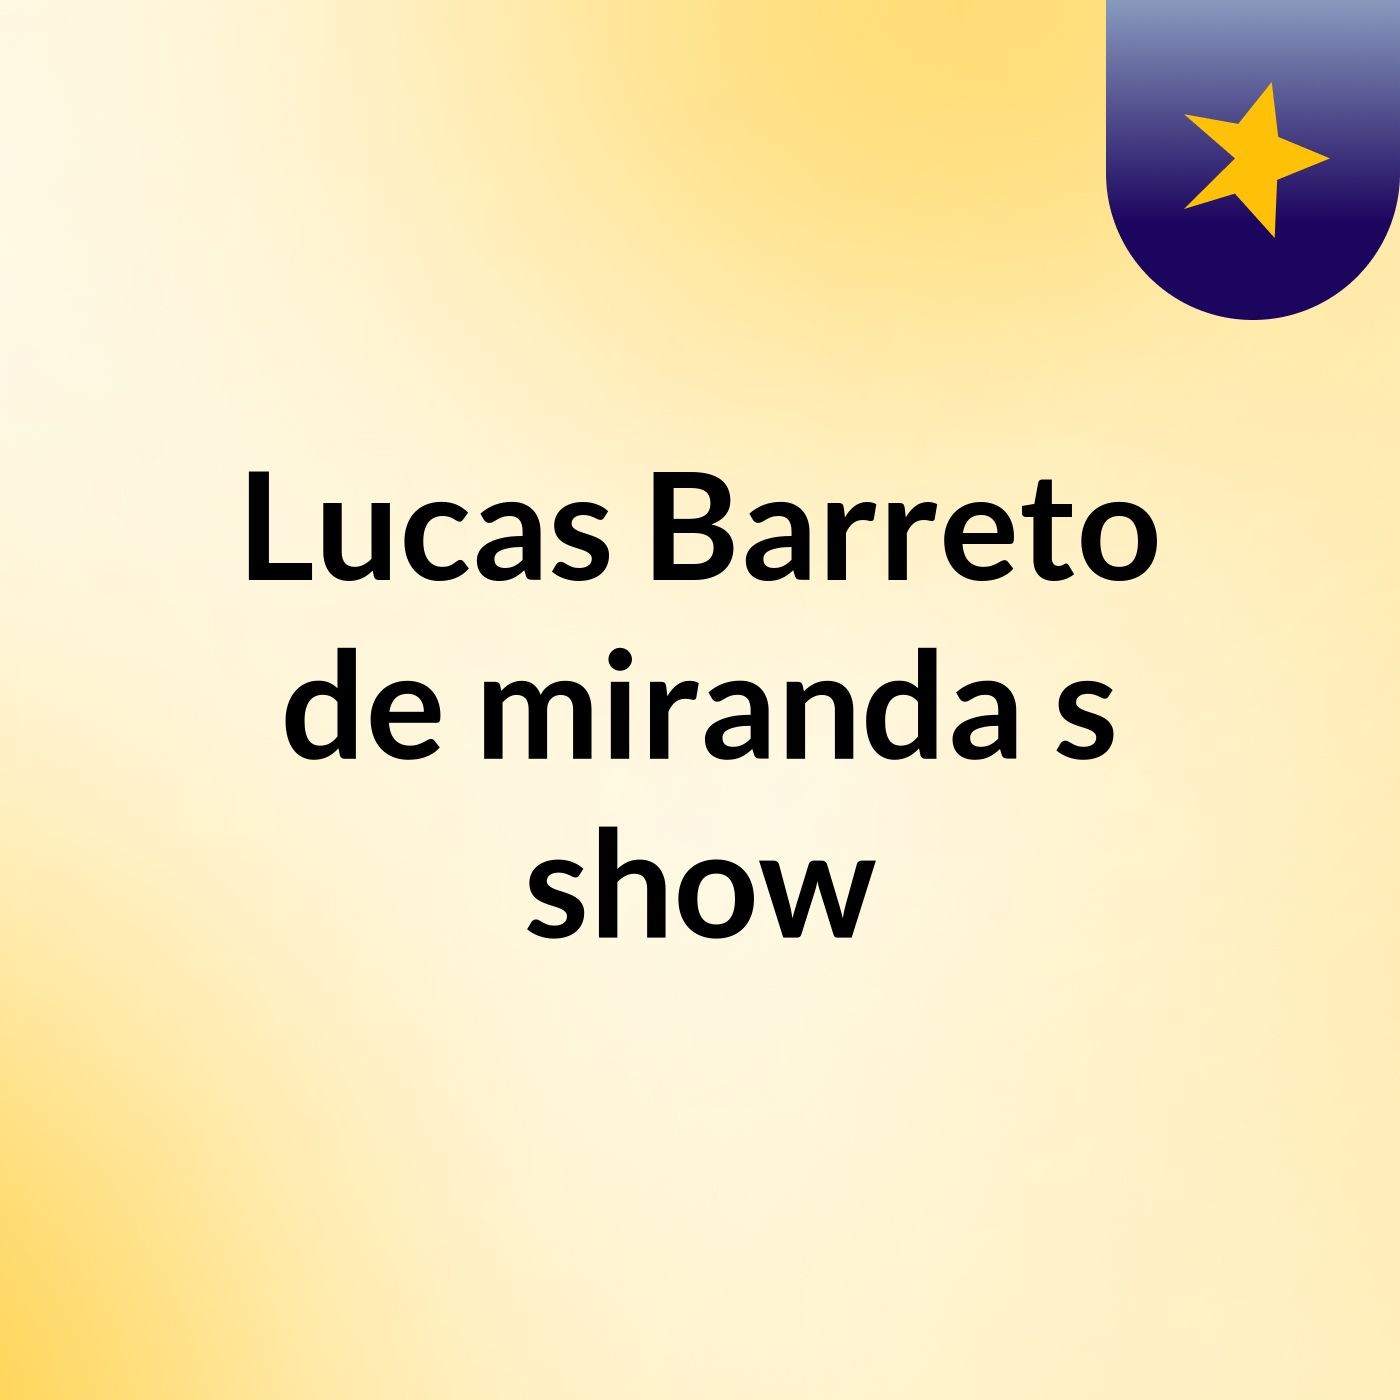 Lucas Barreto de miranda's show